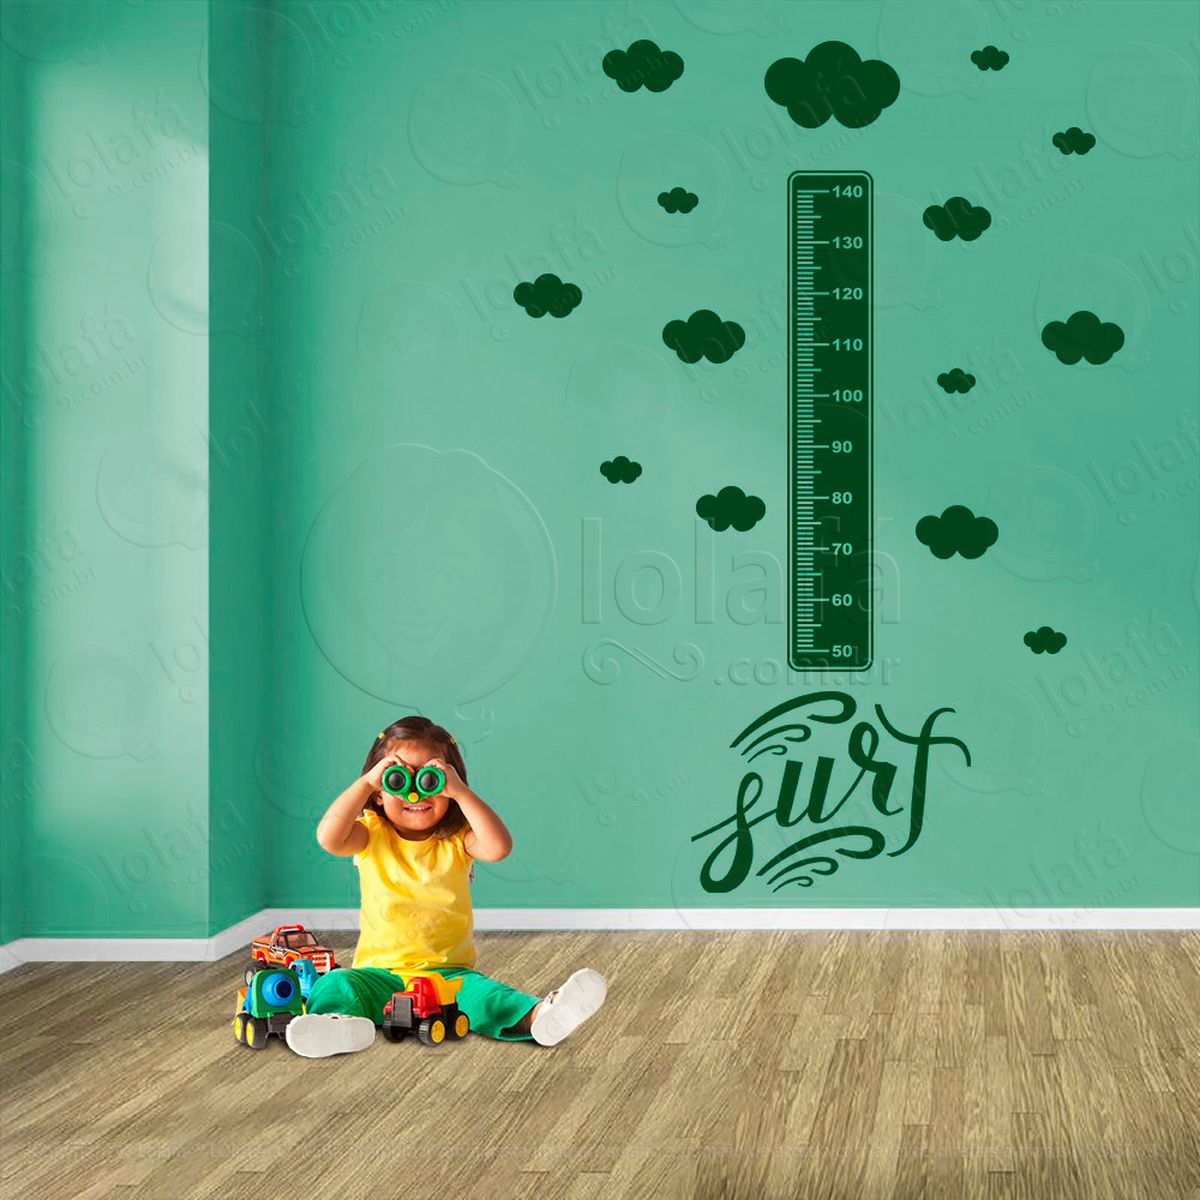 surf e nuvens adesivo régua de crescimento infantil, medidor de altura para quarto, porta e parede - mod:431